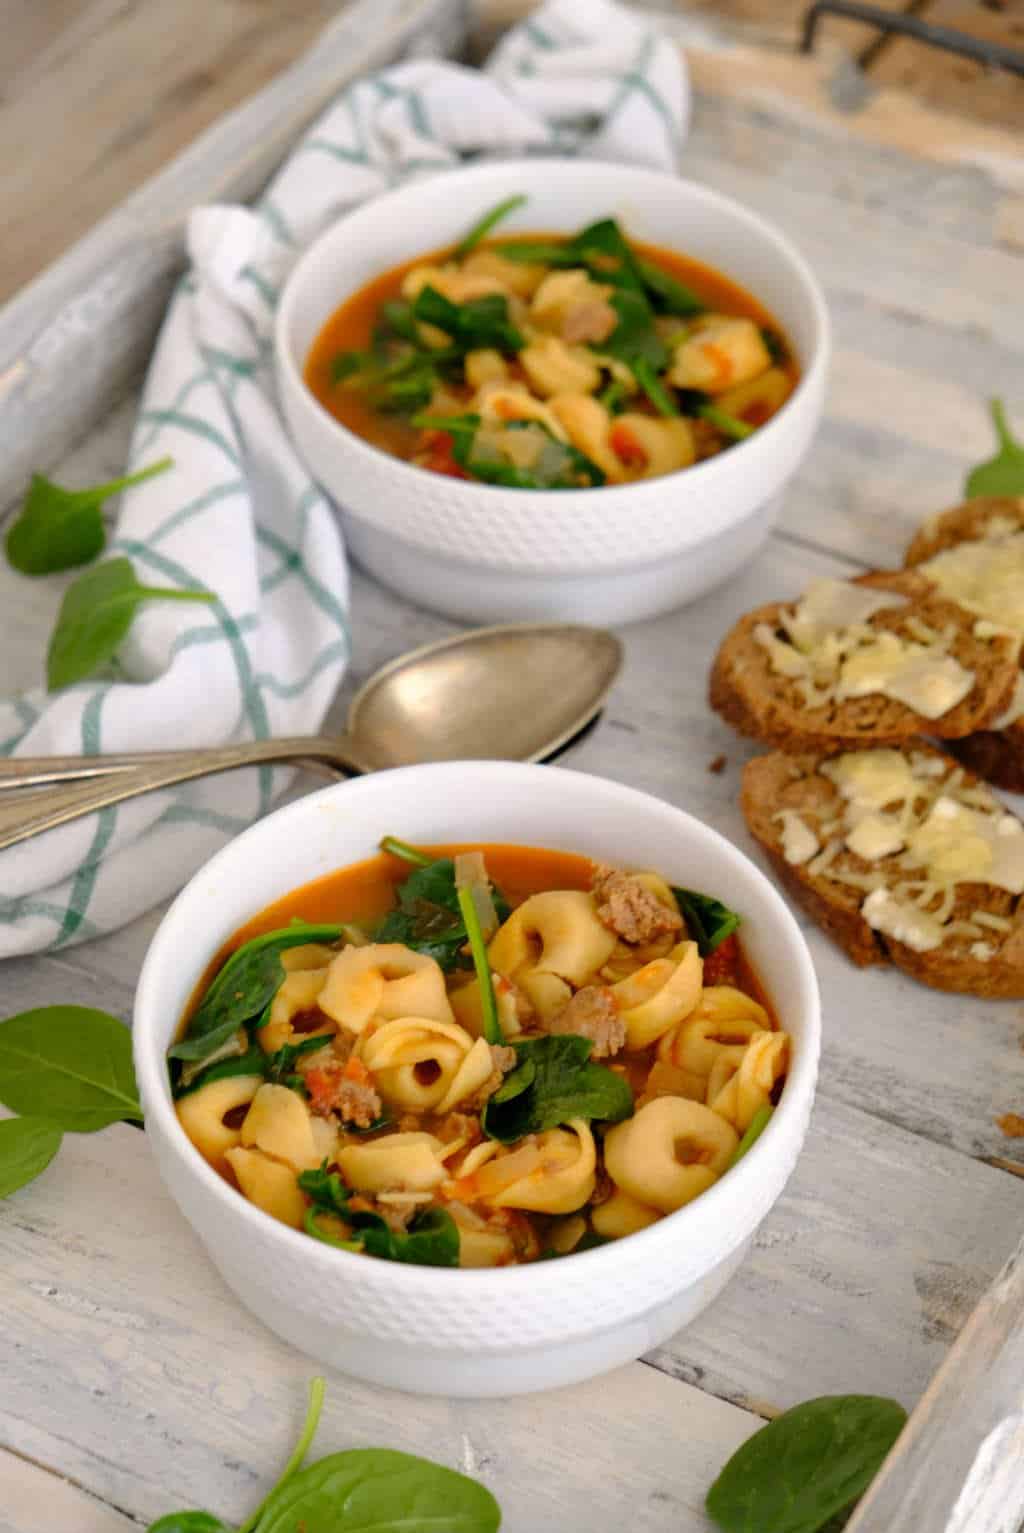 Low-budget gerechten is een nieuwe categorie op de blog. Dit goedkope recept van tortellini soep met spinazie en worst past hier perfect bij. Een flink gevulde maaltijdsoep.